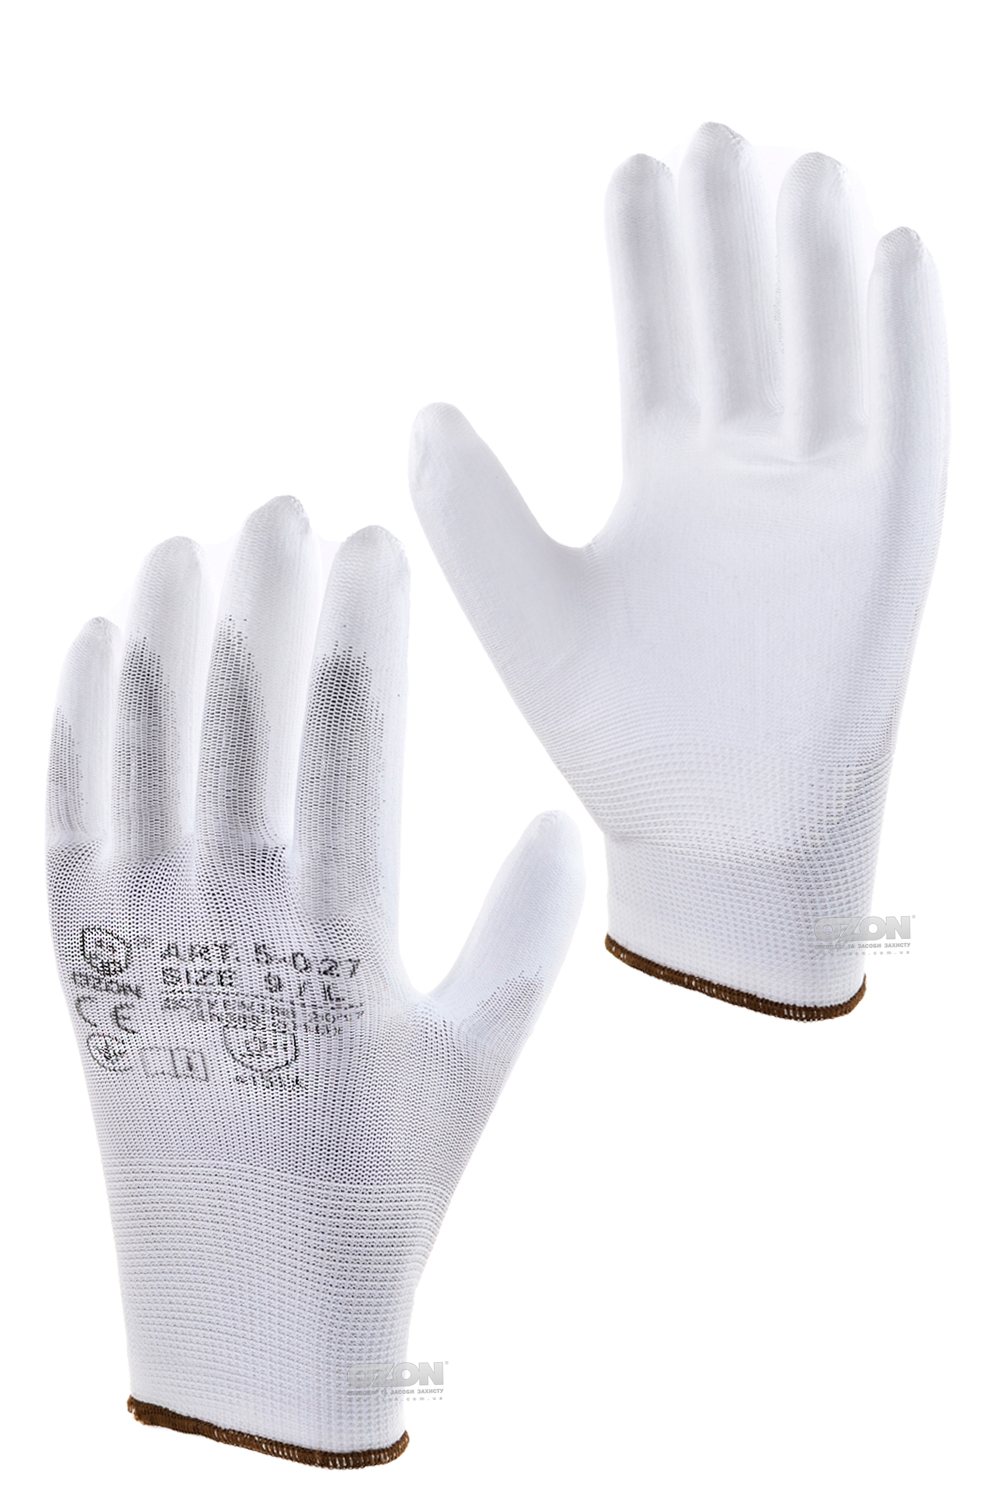 12 пар перчатки п/э с полиуретановым покрытием, белые 5-027 - Фото 1